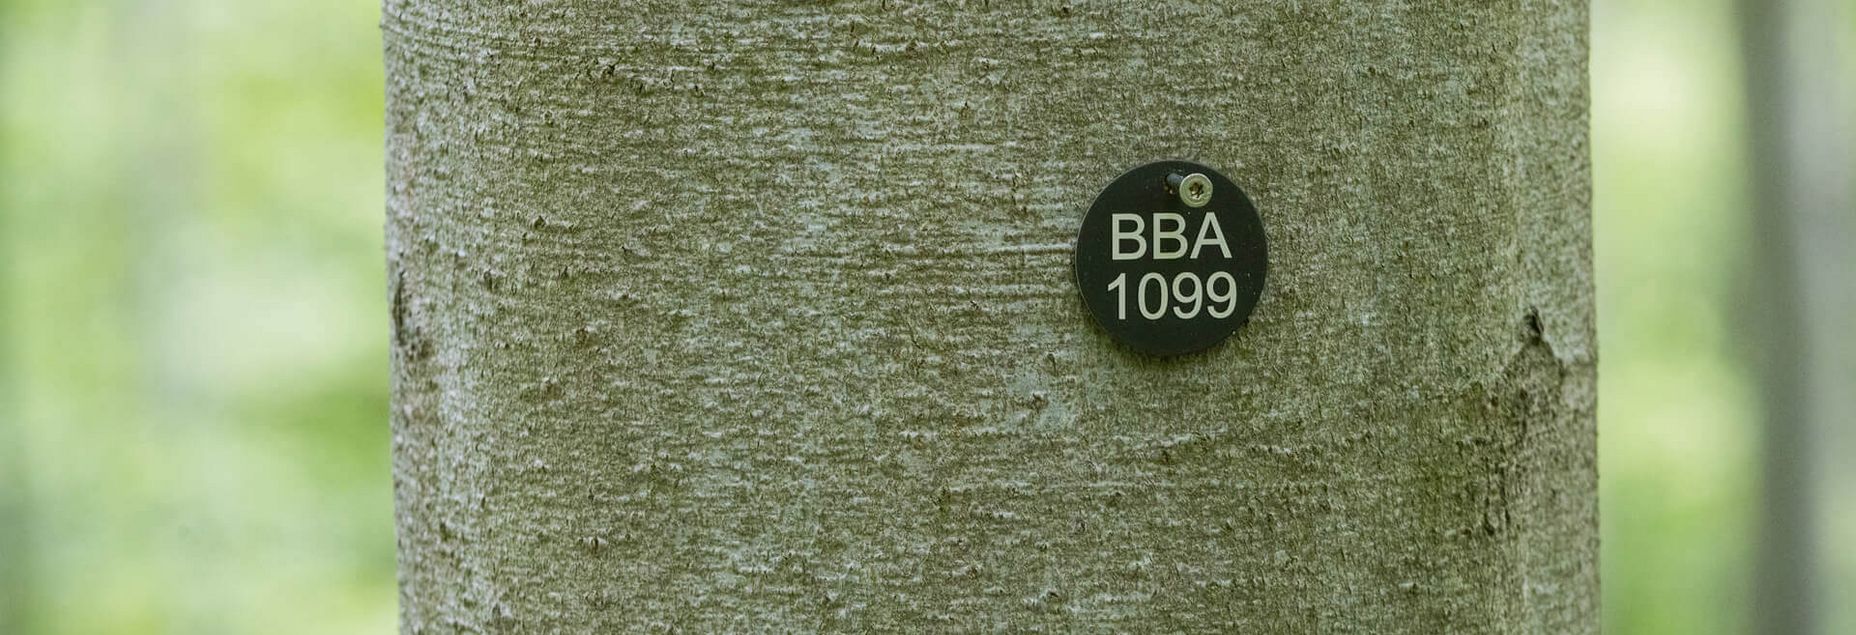 Baum BBA 1099 - Plakette